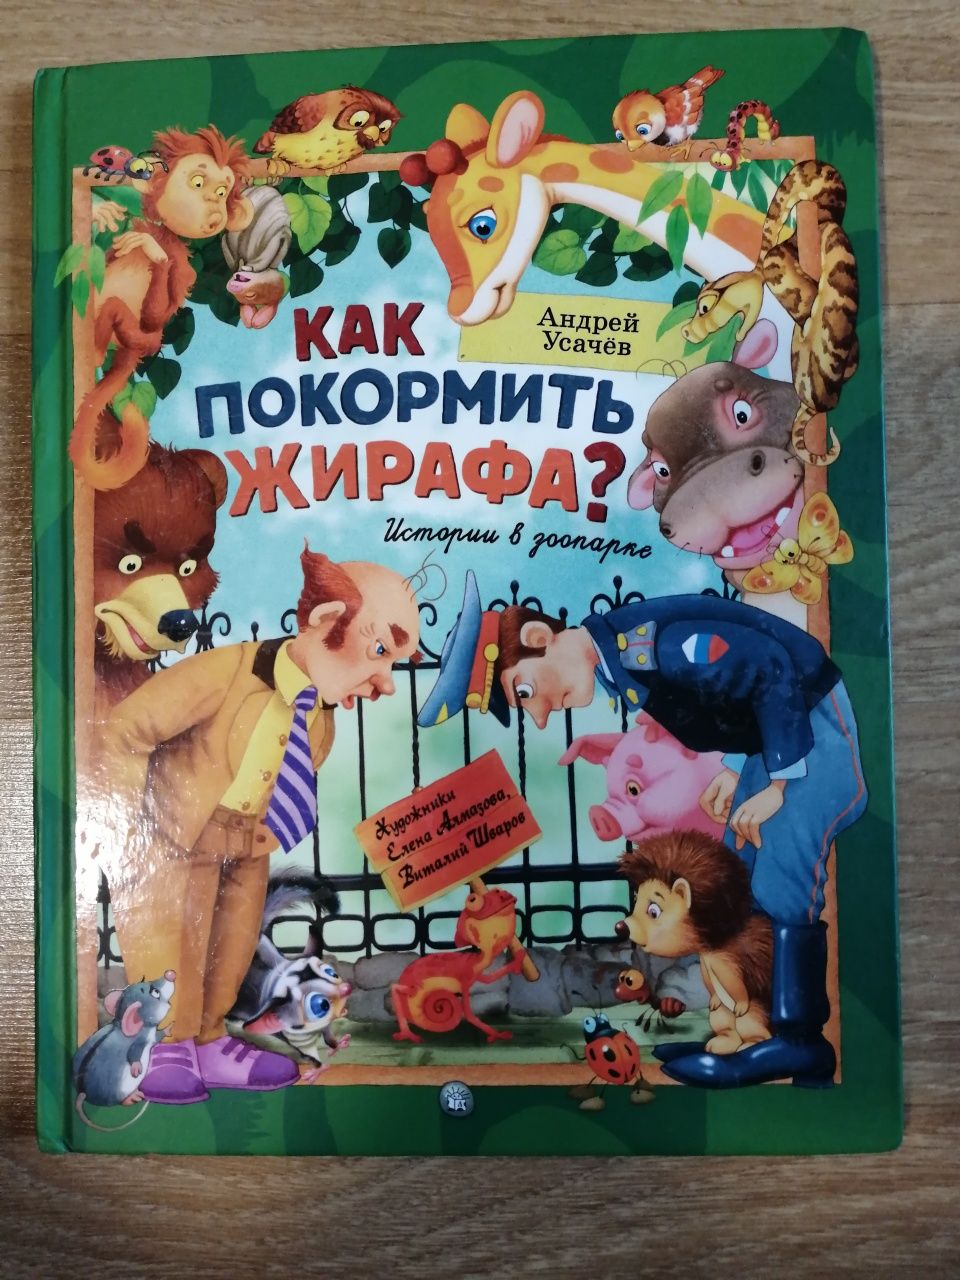 Детские книги на русском языке, Вили Винки, Махаон, Стрекоза